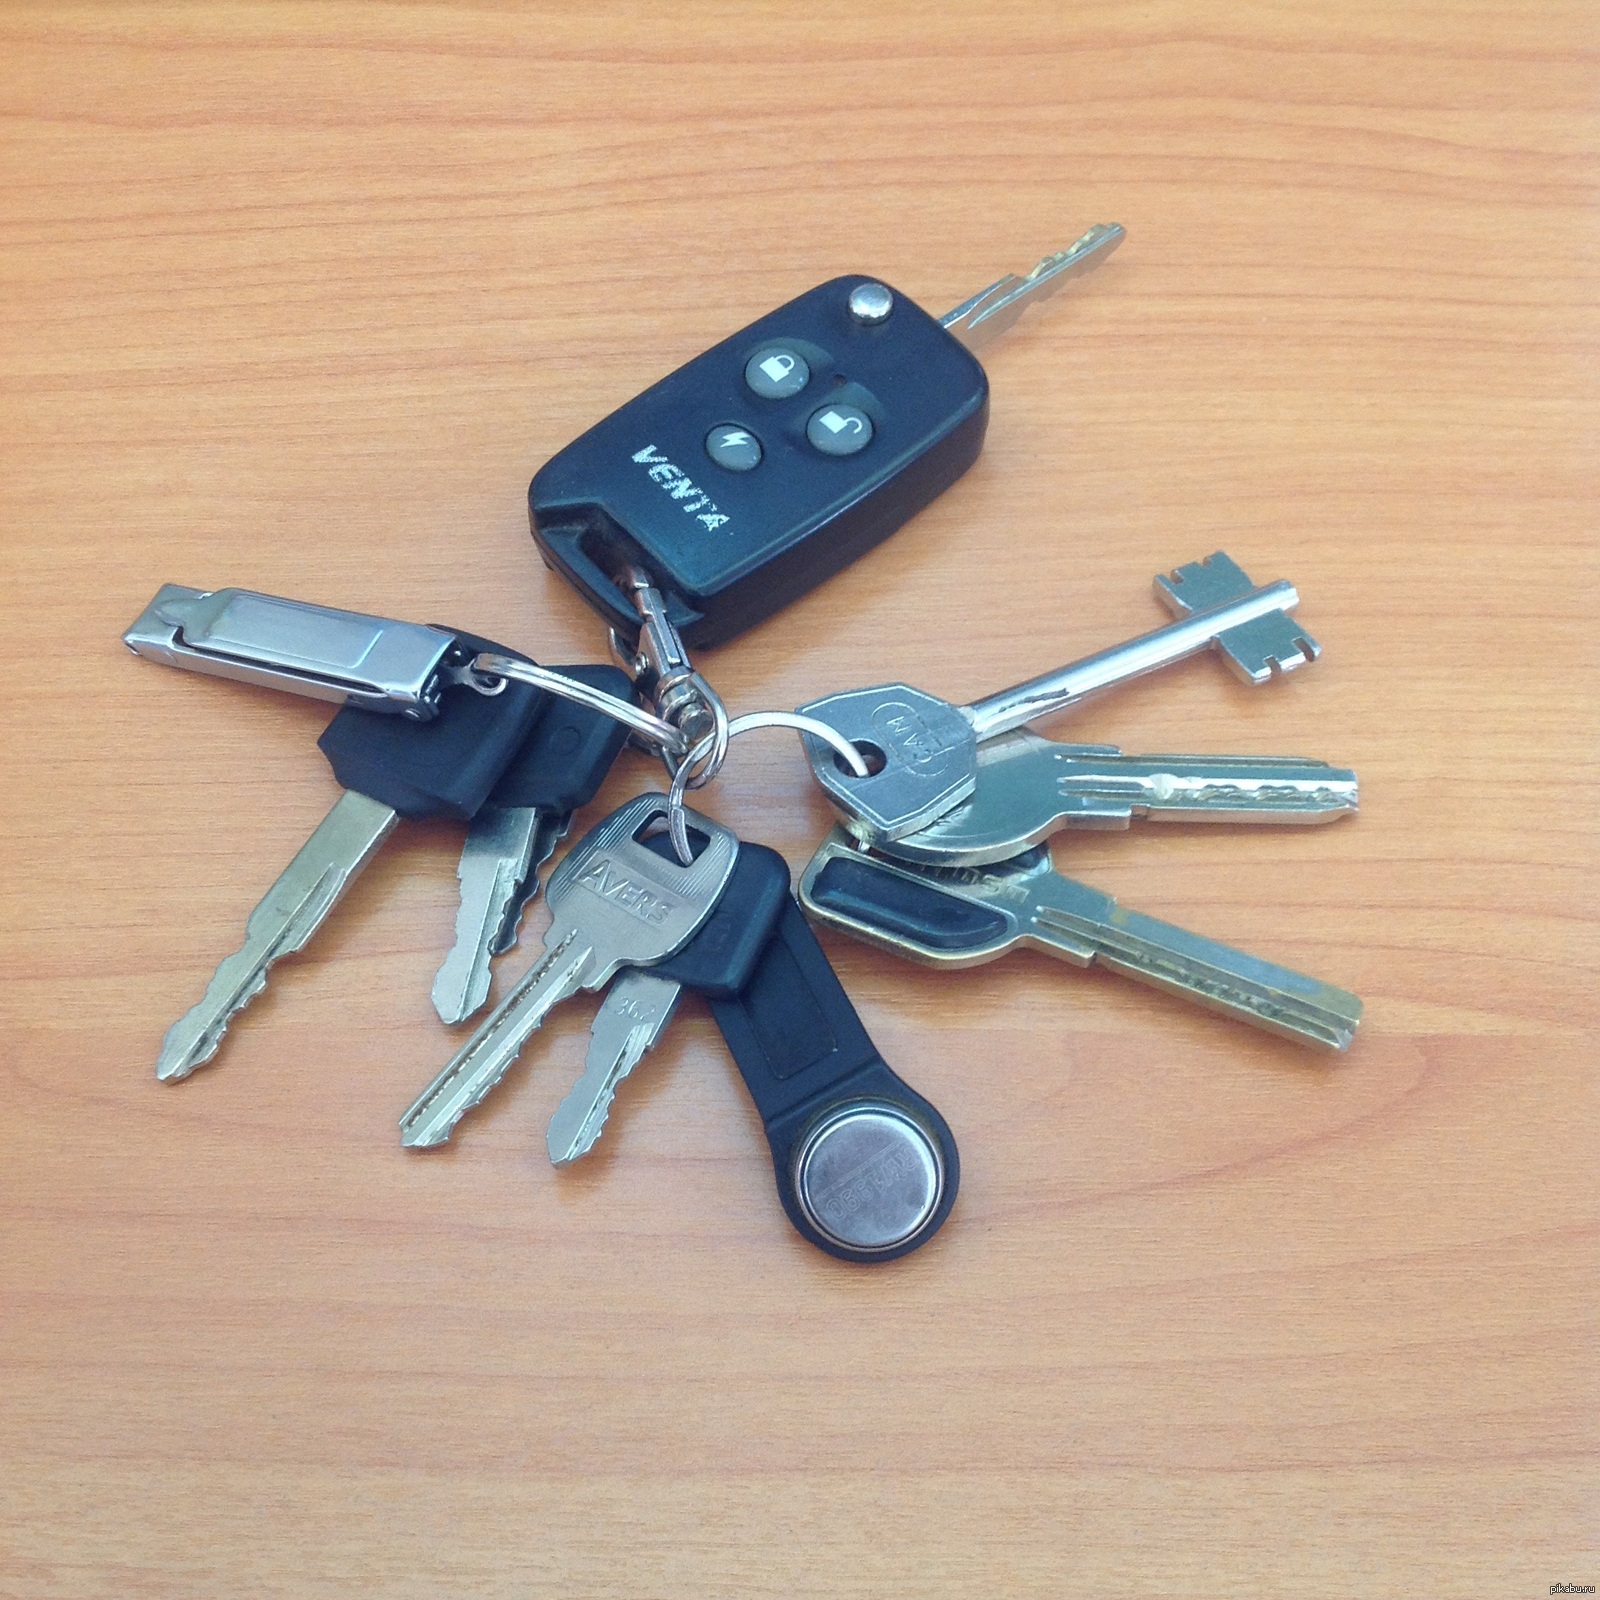 Ключ от машины: Что делать, если ключи от машины потерялись